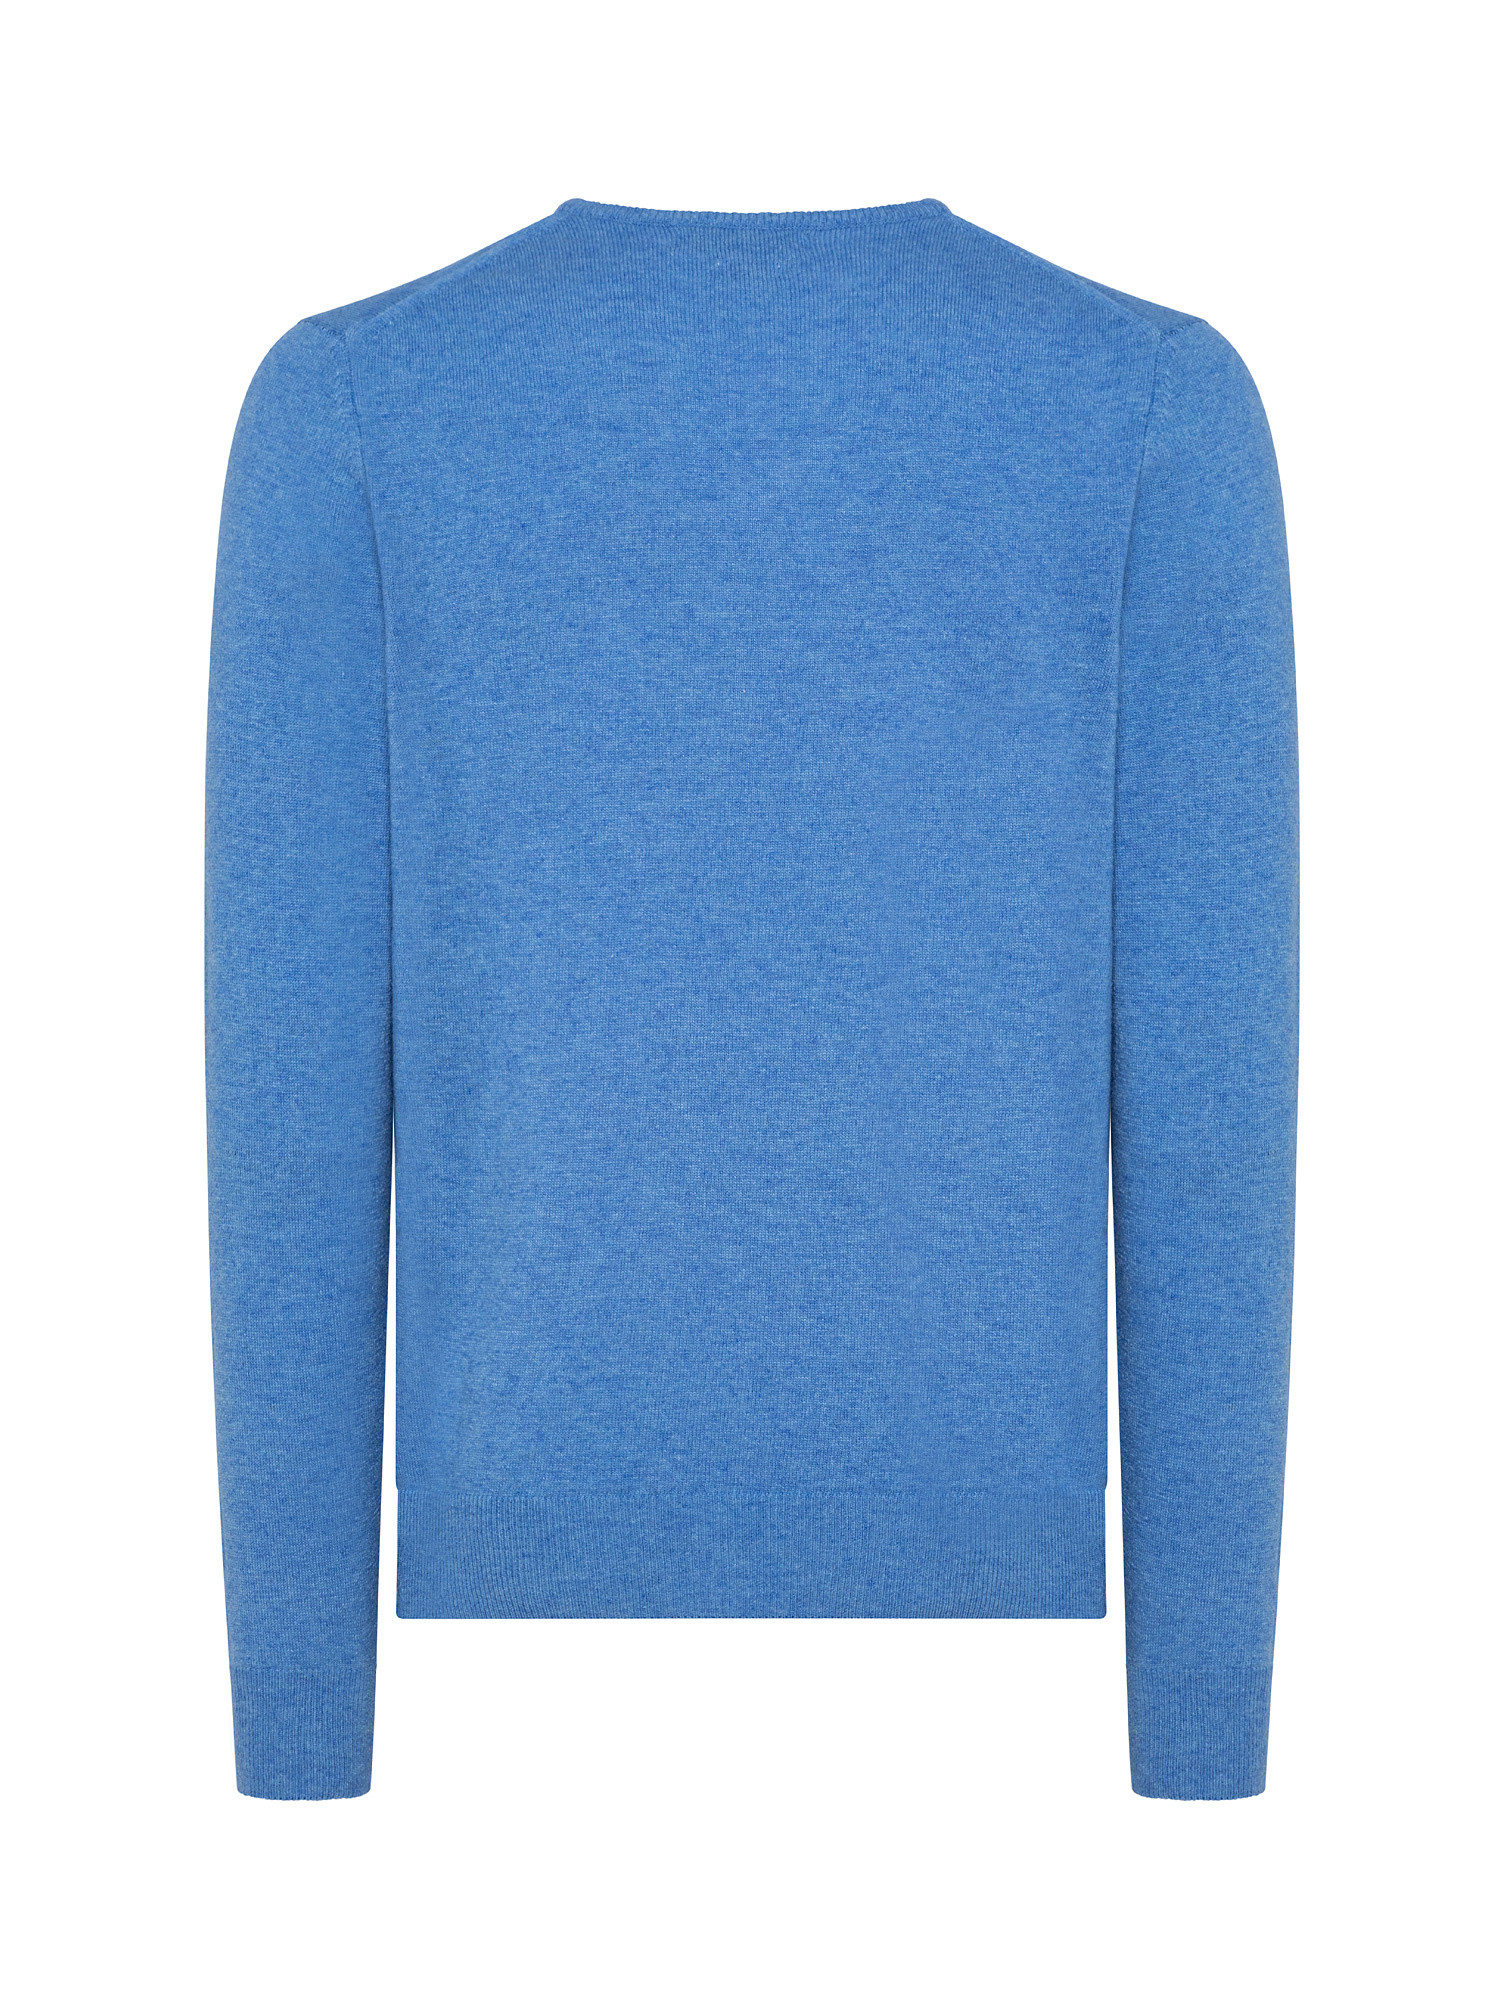 Basic V-neck pullover, Light Blue, large image number 1